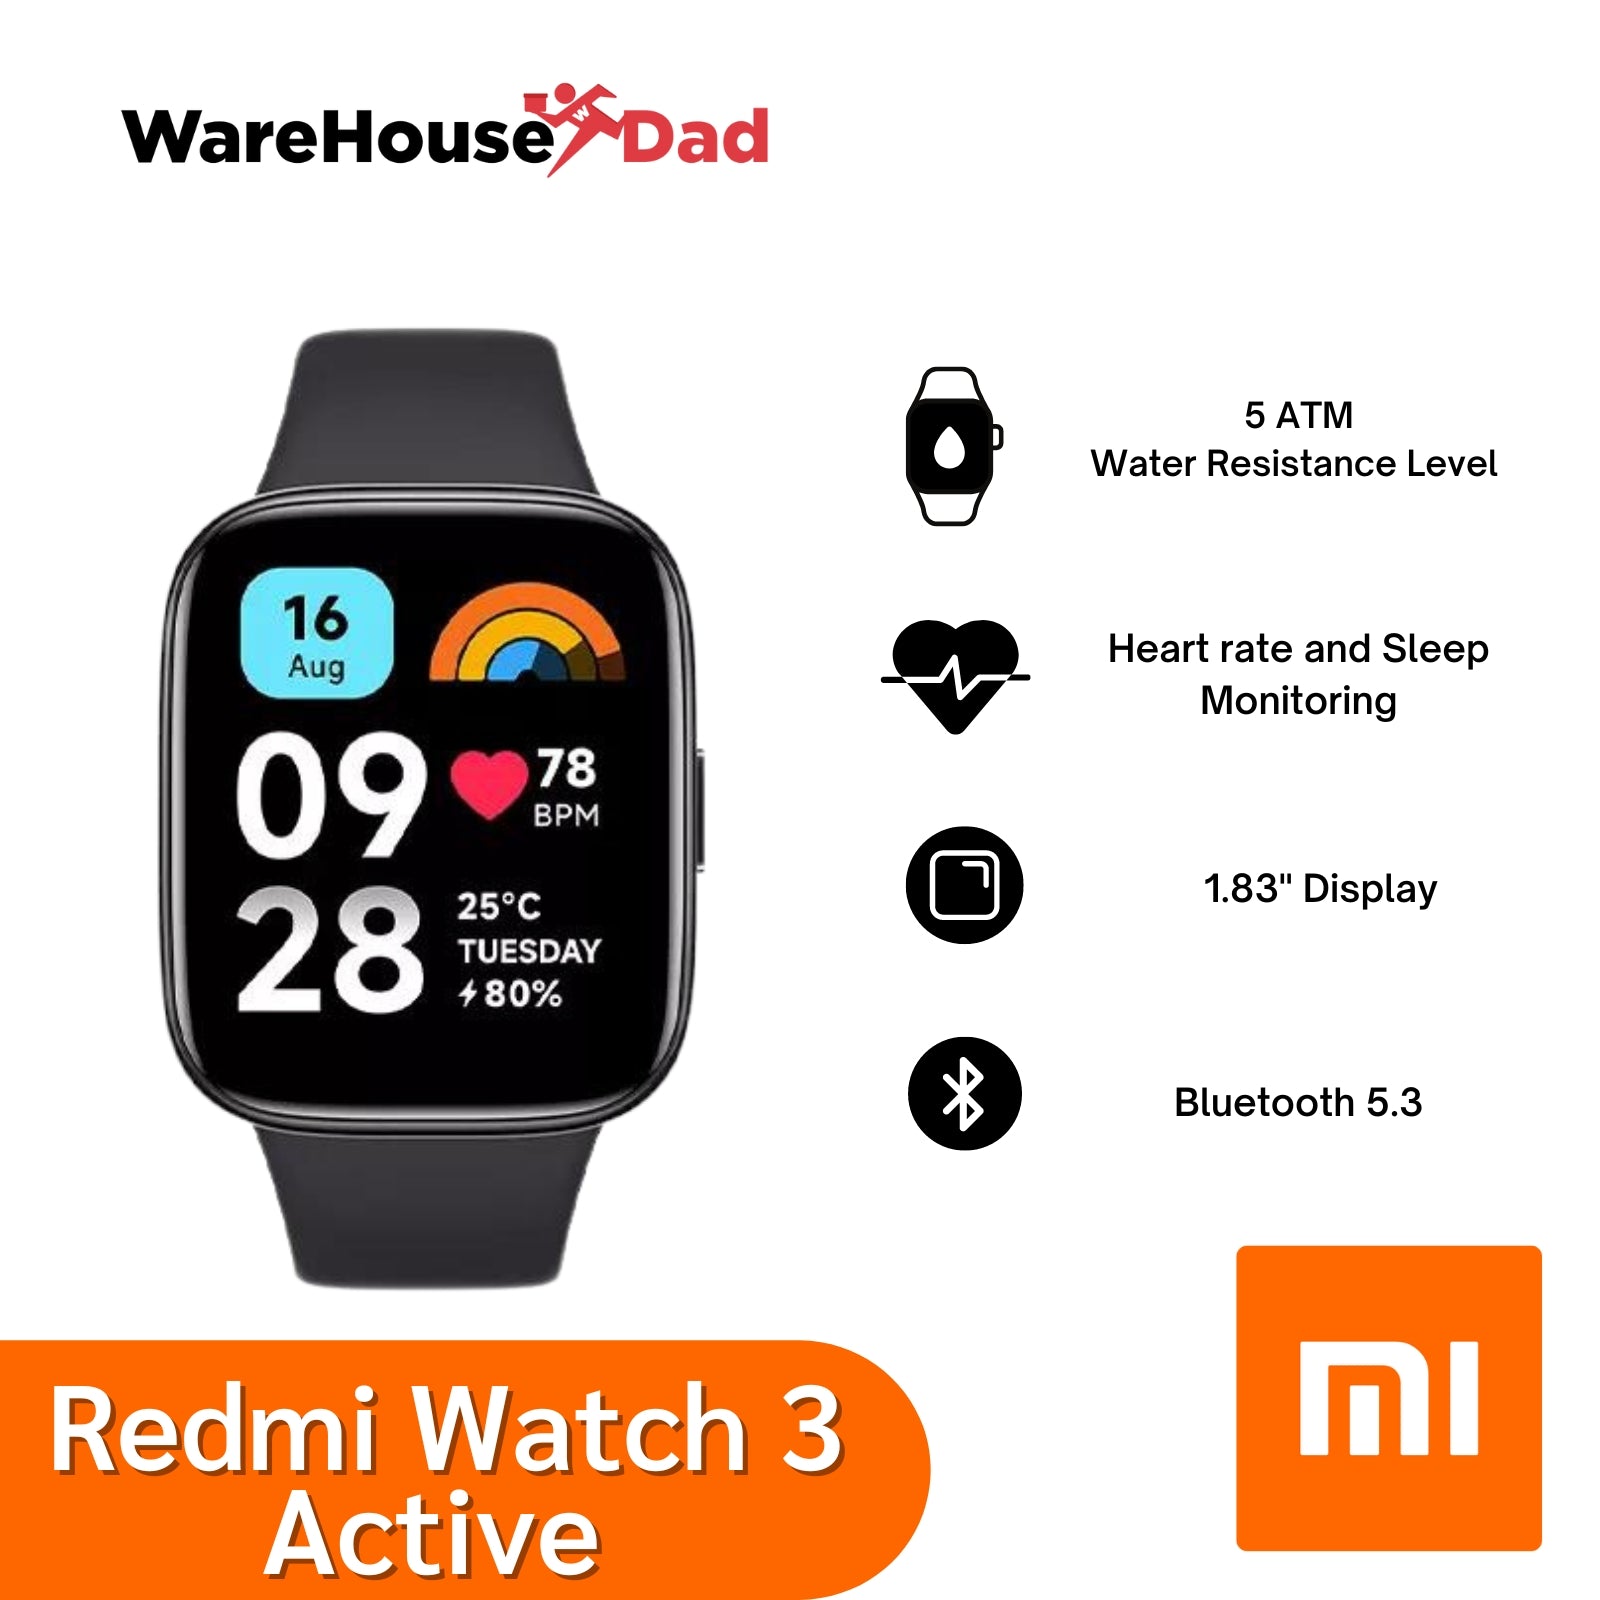 Xiaomi Redmi Watch 3 Active – WarehouseDad